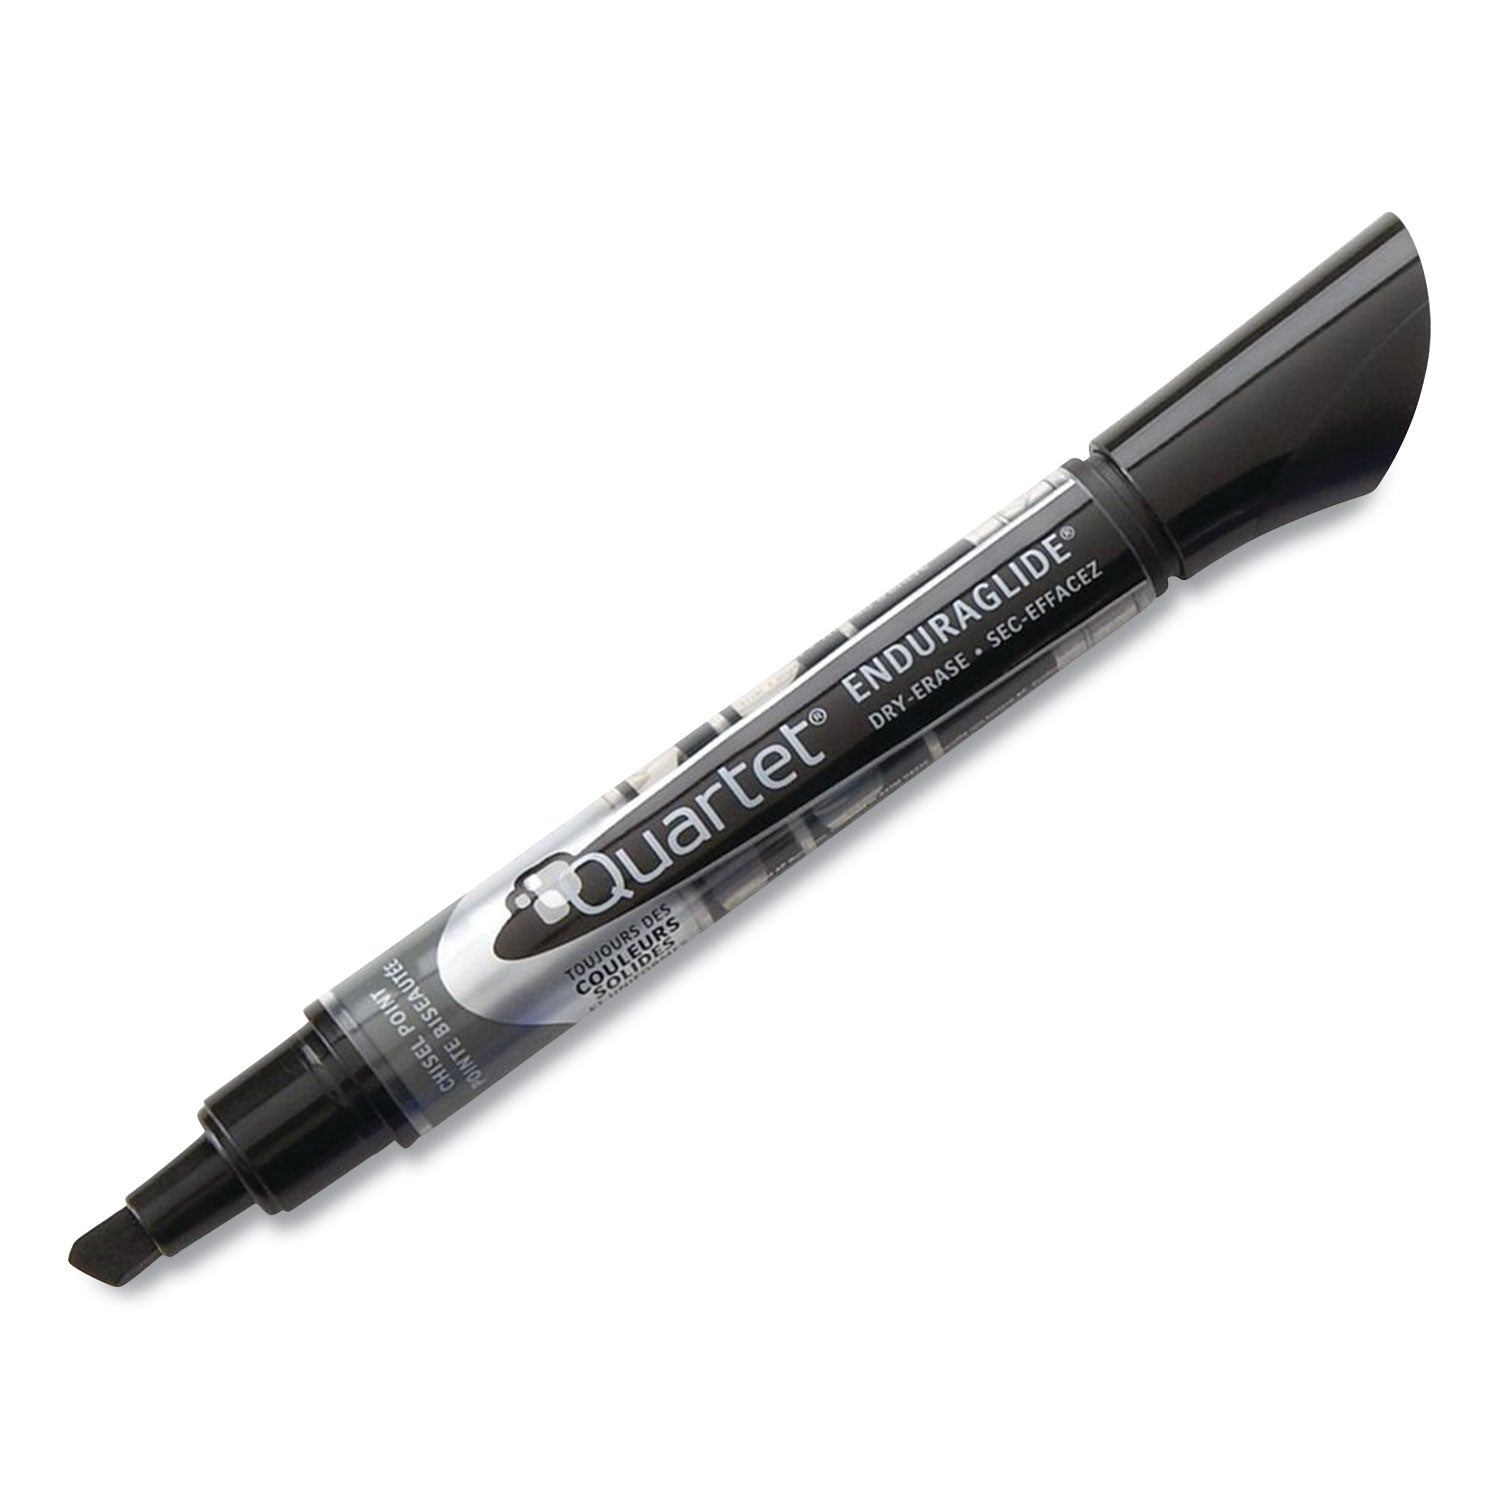 enduraglide-dry-erase-marker-kit-with-cleaner-and-eraser-broad-chisel-tip-assorted-colors-4-pack_qrt5001m4sk - 3